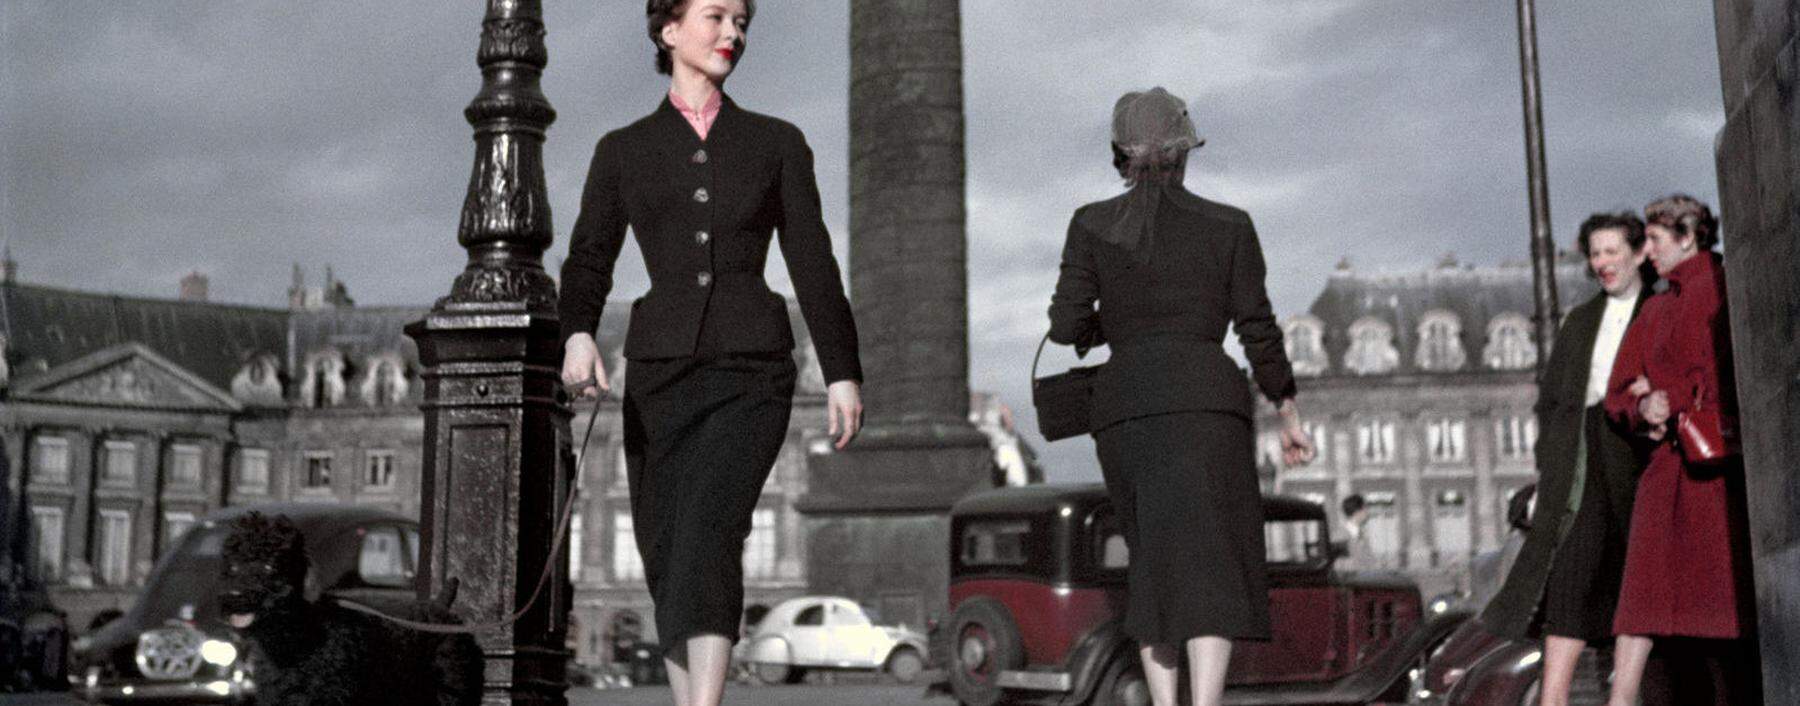 Betörende Weiblichkeit. Diors „New Look“ formte den Körper mit festen Korsetts, Polsterung und Steifleinenfutter. 1948 in Paris.